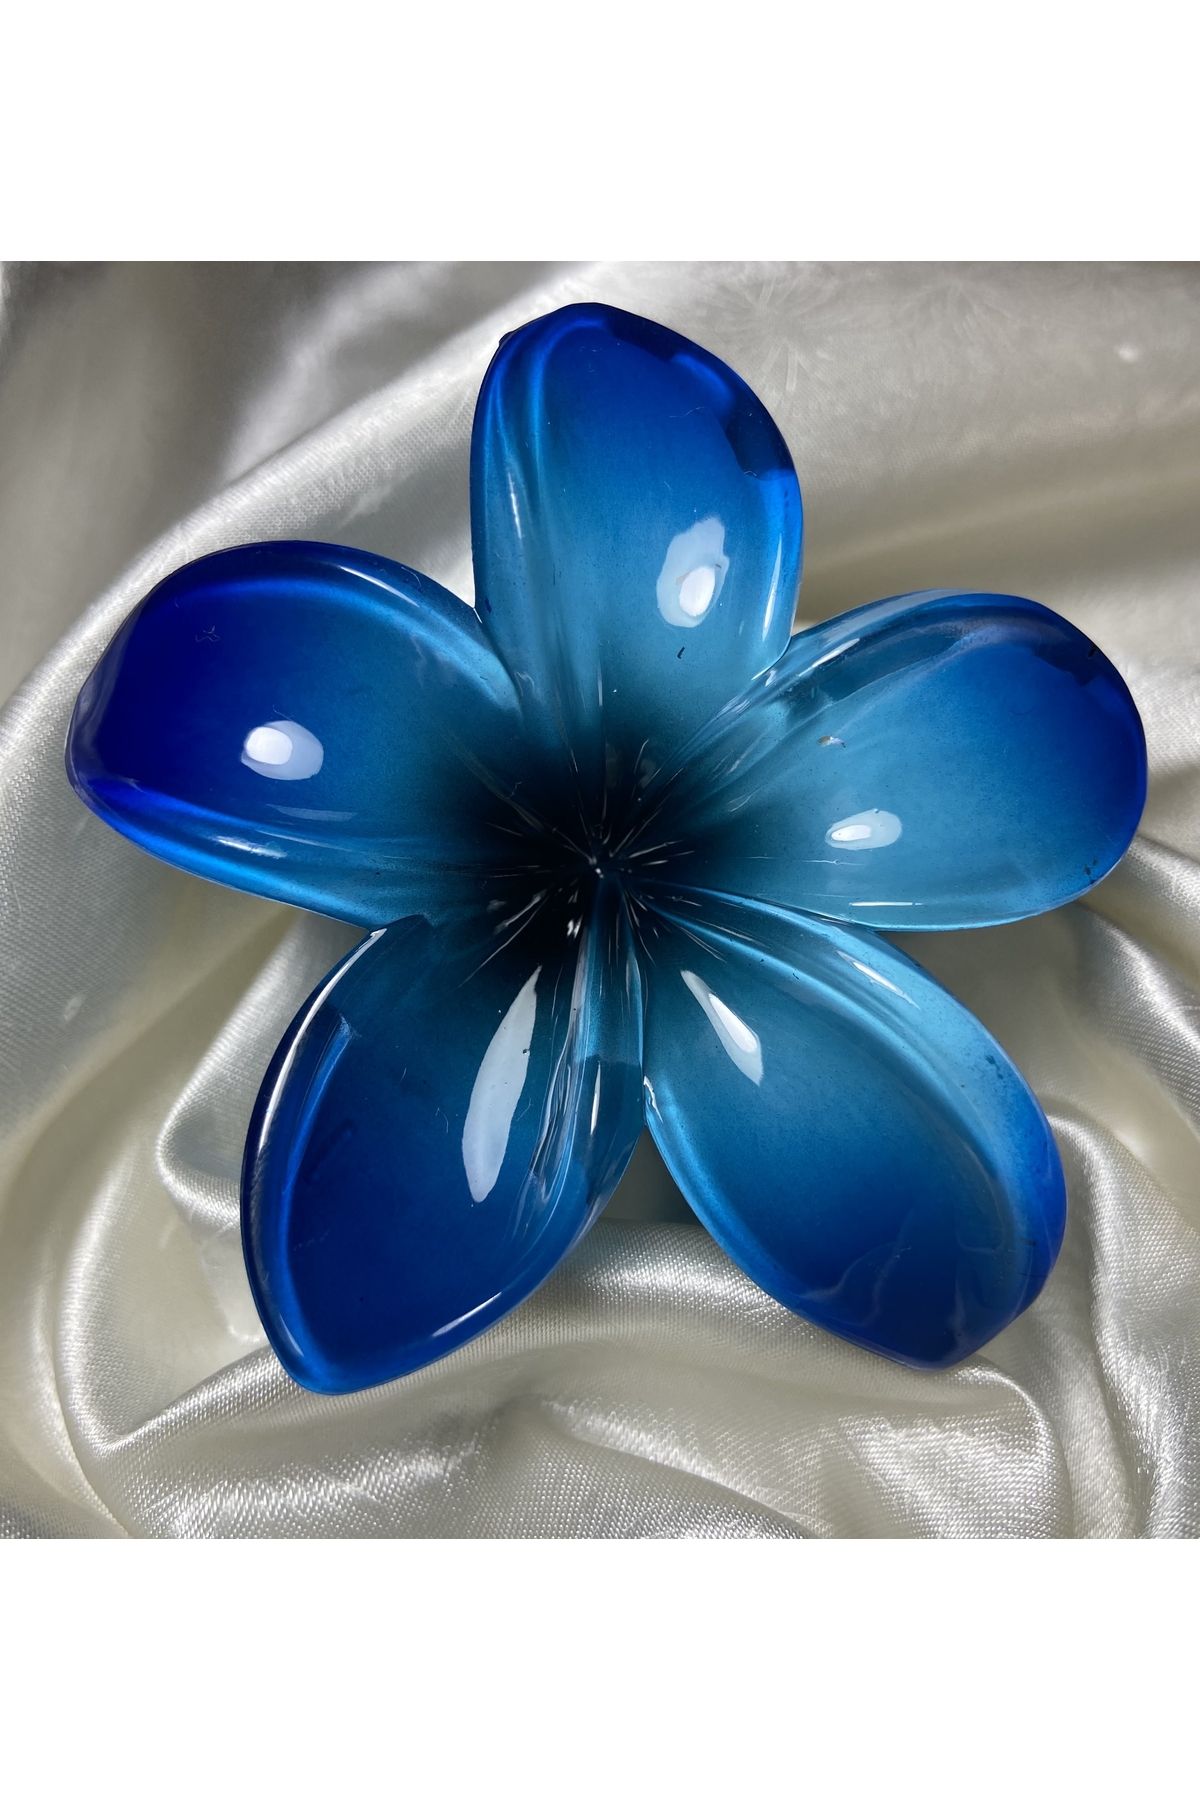 ELİF COLLECTİON Lotus Çiçeği Yeni Trend Kadın Mandal Toka Mavi Büyük Boy 8 cm